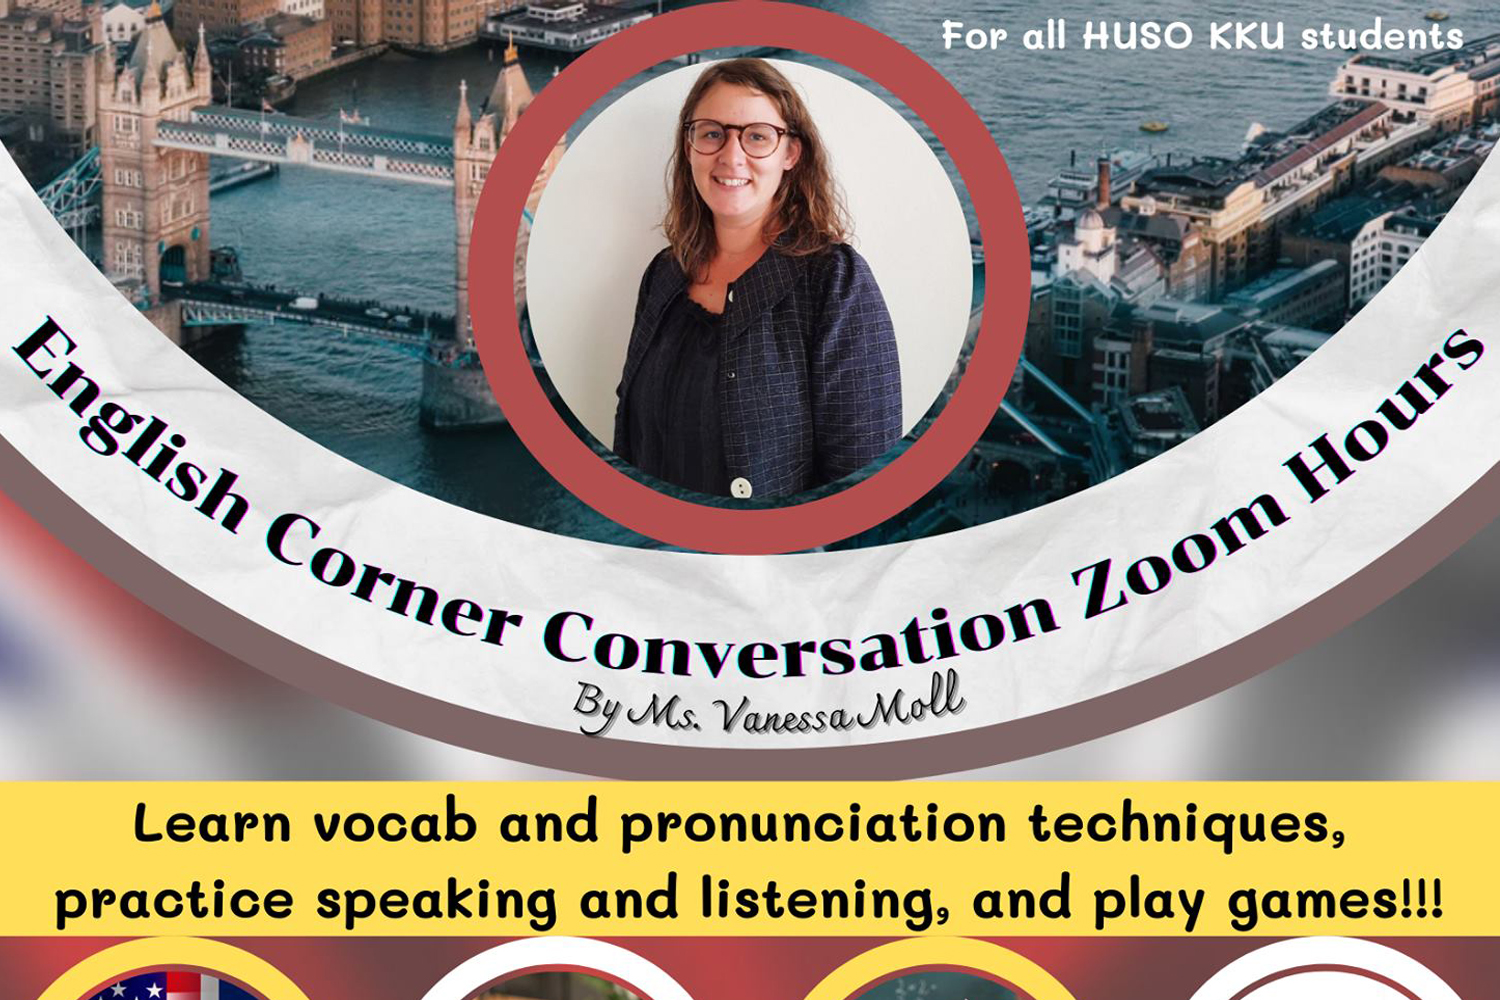 ขอเชิญนักศึกษาคณะมนุษยศาสตร์และสังคมศาสตร์เข้าร่วมกิจกรรม English Corner Conversation Zoom Hours ระหว่างวันที่ 2-30 มิถุนายน 2564 ผ่านโปรแกรม Zoom เพื่อฝึกทักษะการฟัง พูด ภาษาอังกฤษกับอาจารย์ Vanessa Moll